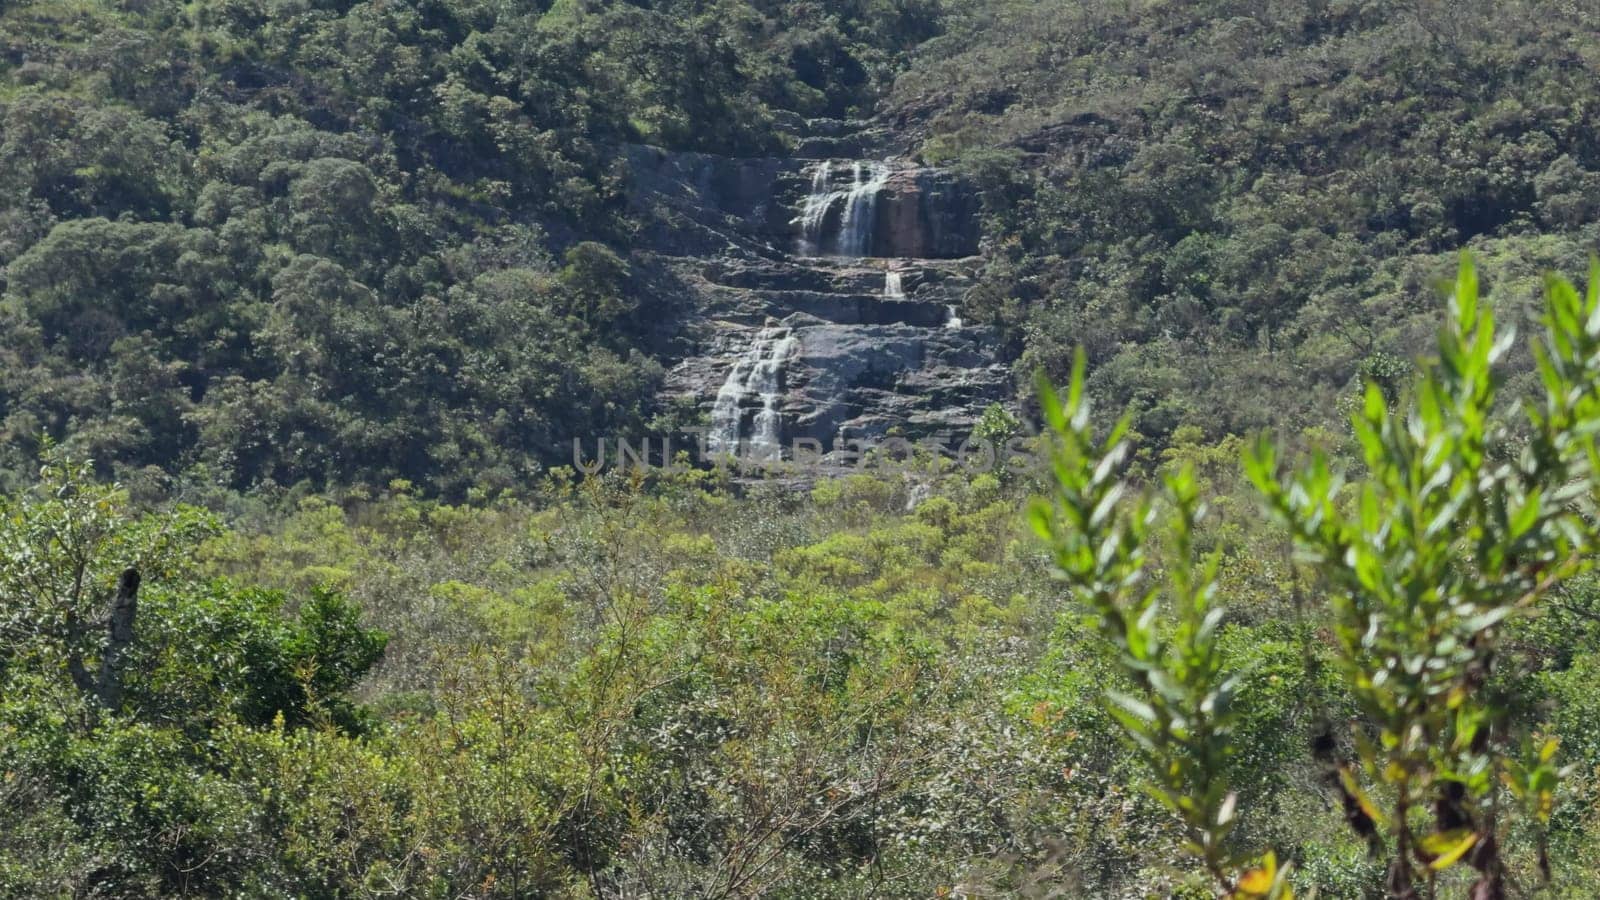 Serene Waterfall in Brazilian Atlantic Forest on Summer Day by FerradalFCG